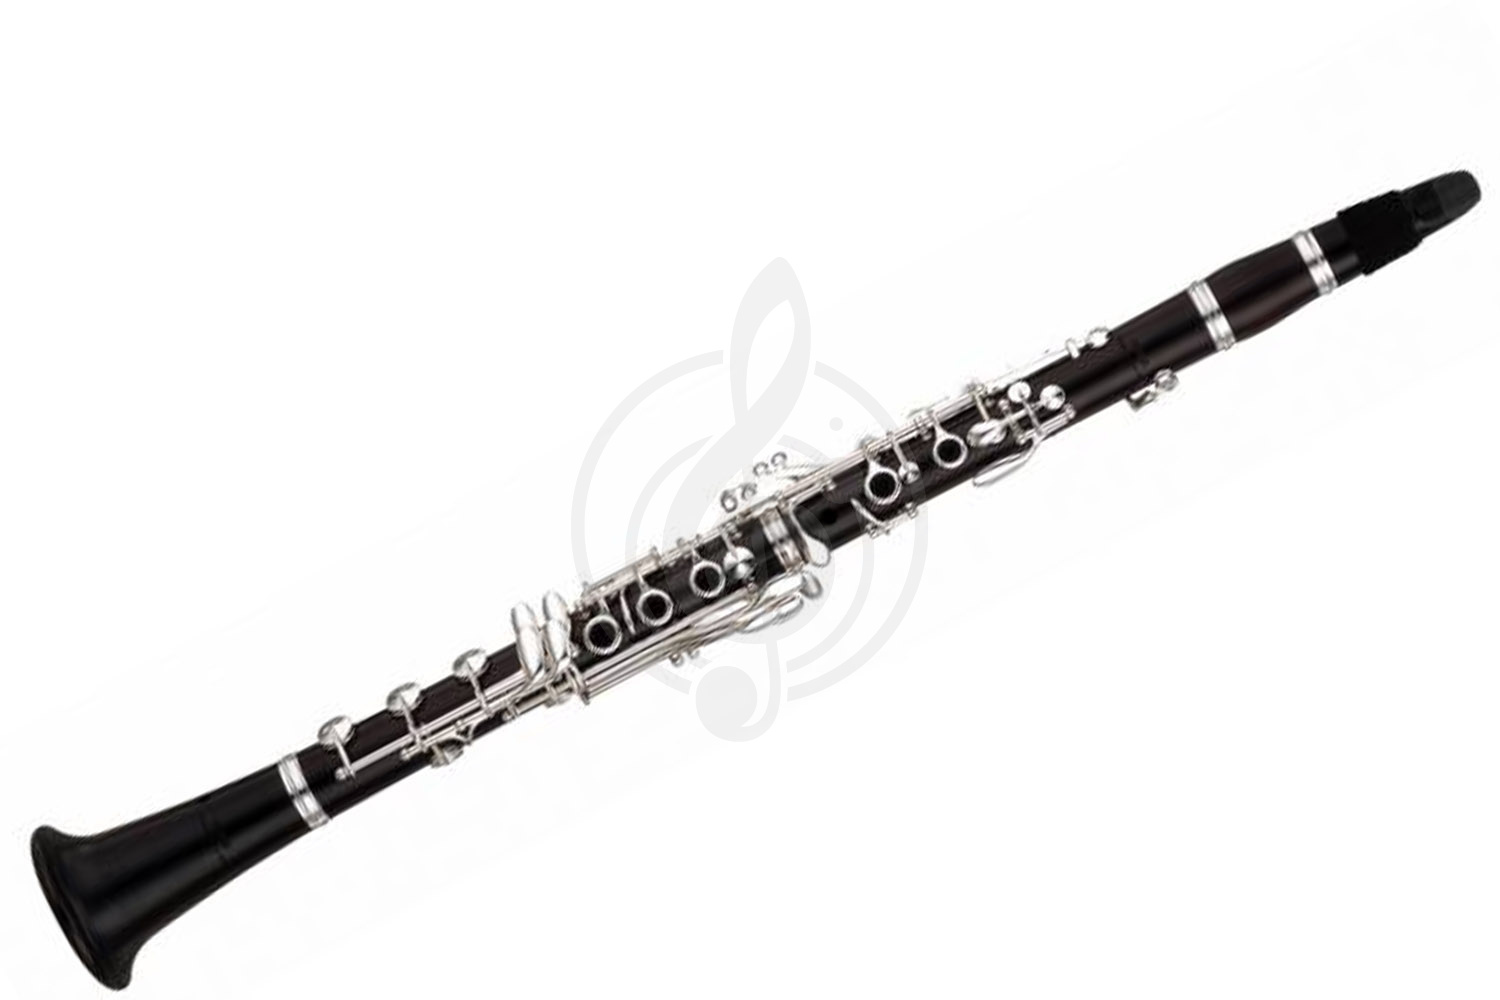 Кларнет Кларнеты Yamaha Yamaha YCL-846 - кларнет A, (немецкая мензура), профессиональный, чёрное дерево, ручная работа YCL-846 //WITH CASE COVER - фото 1